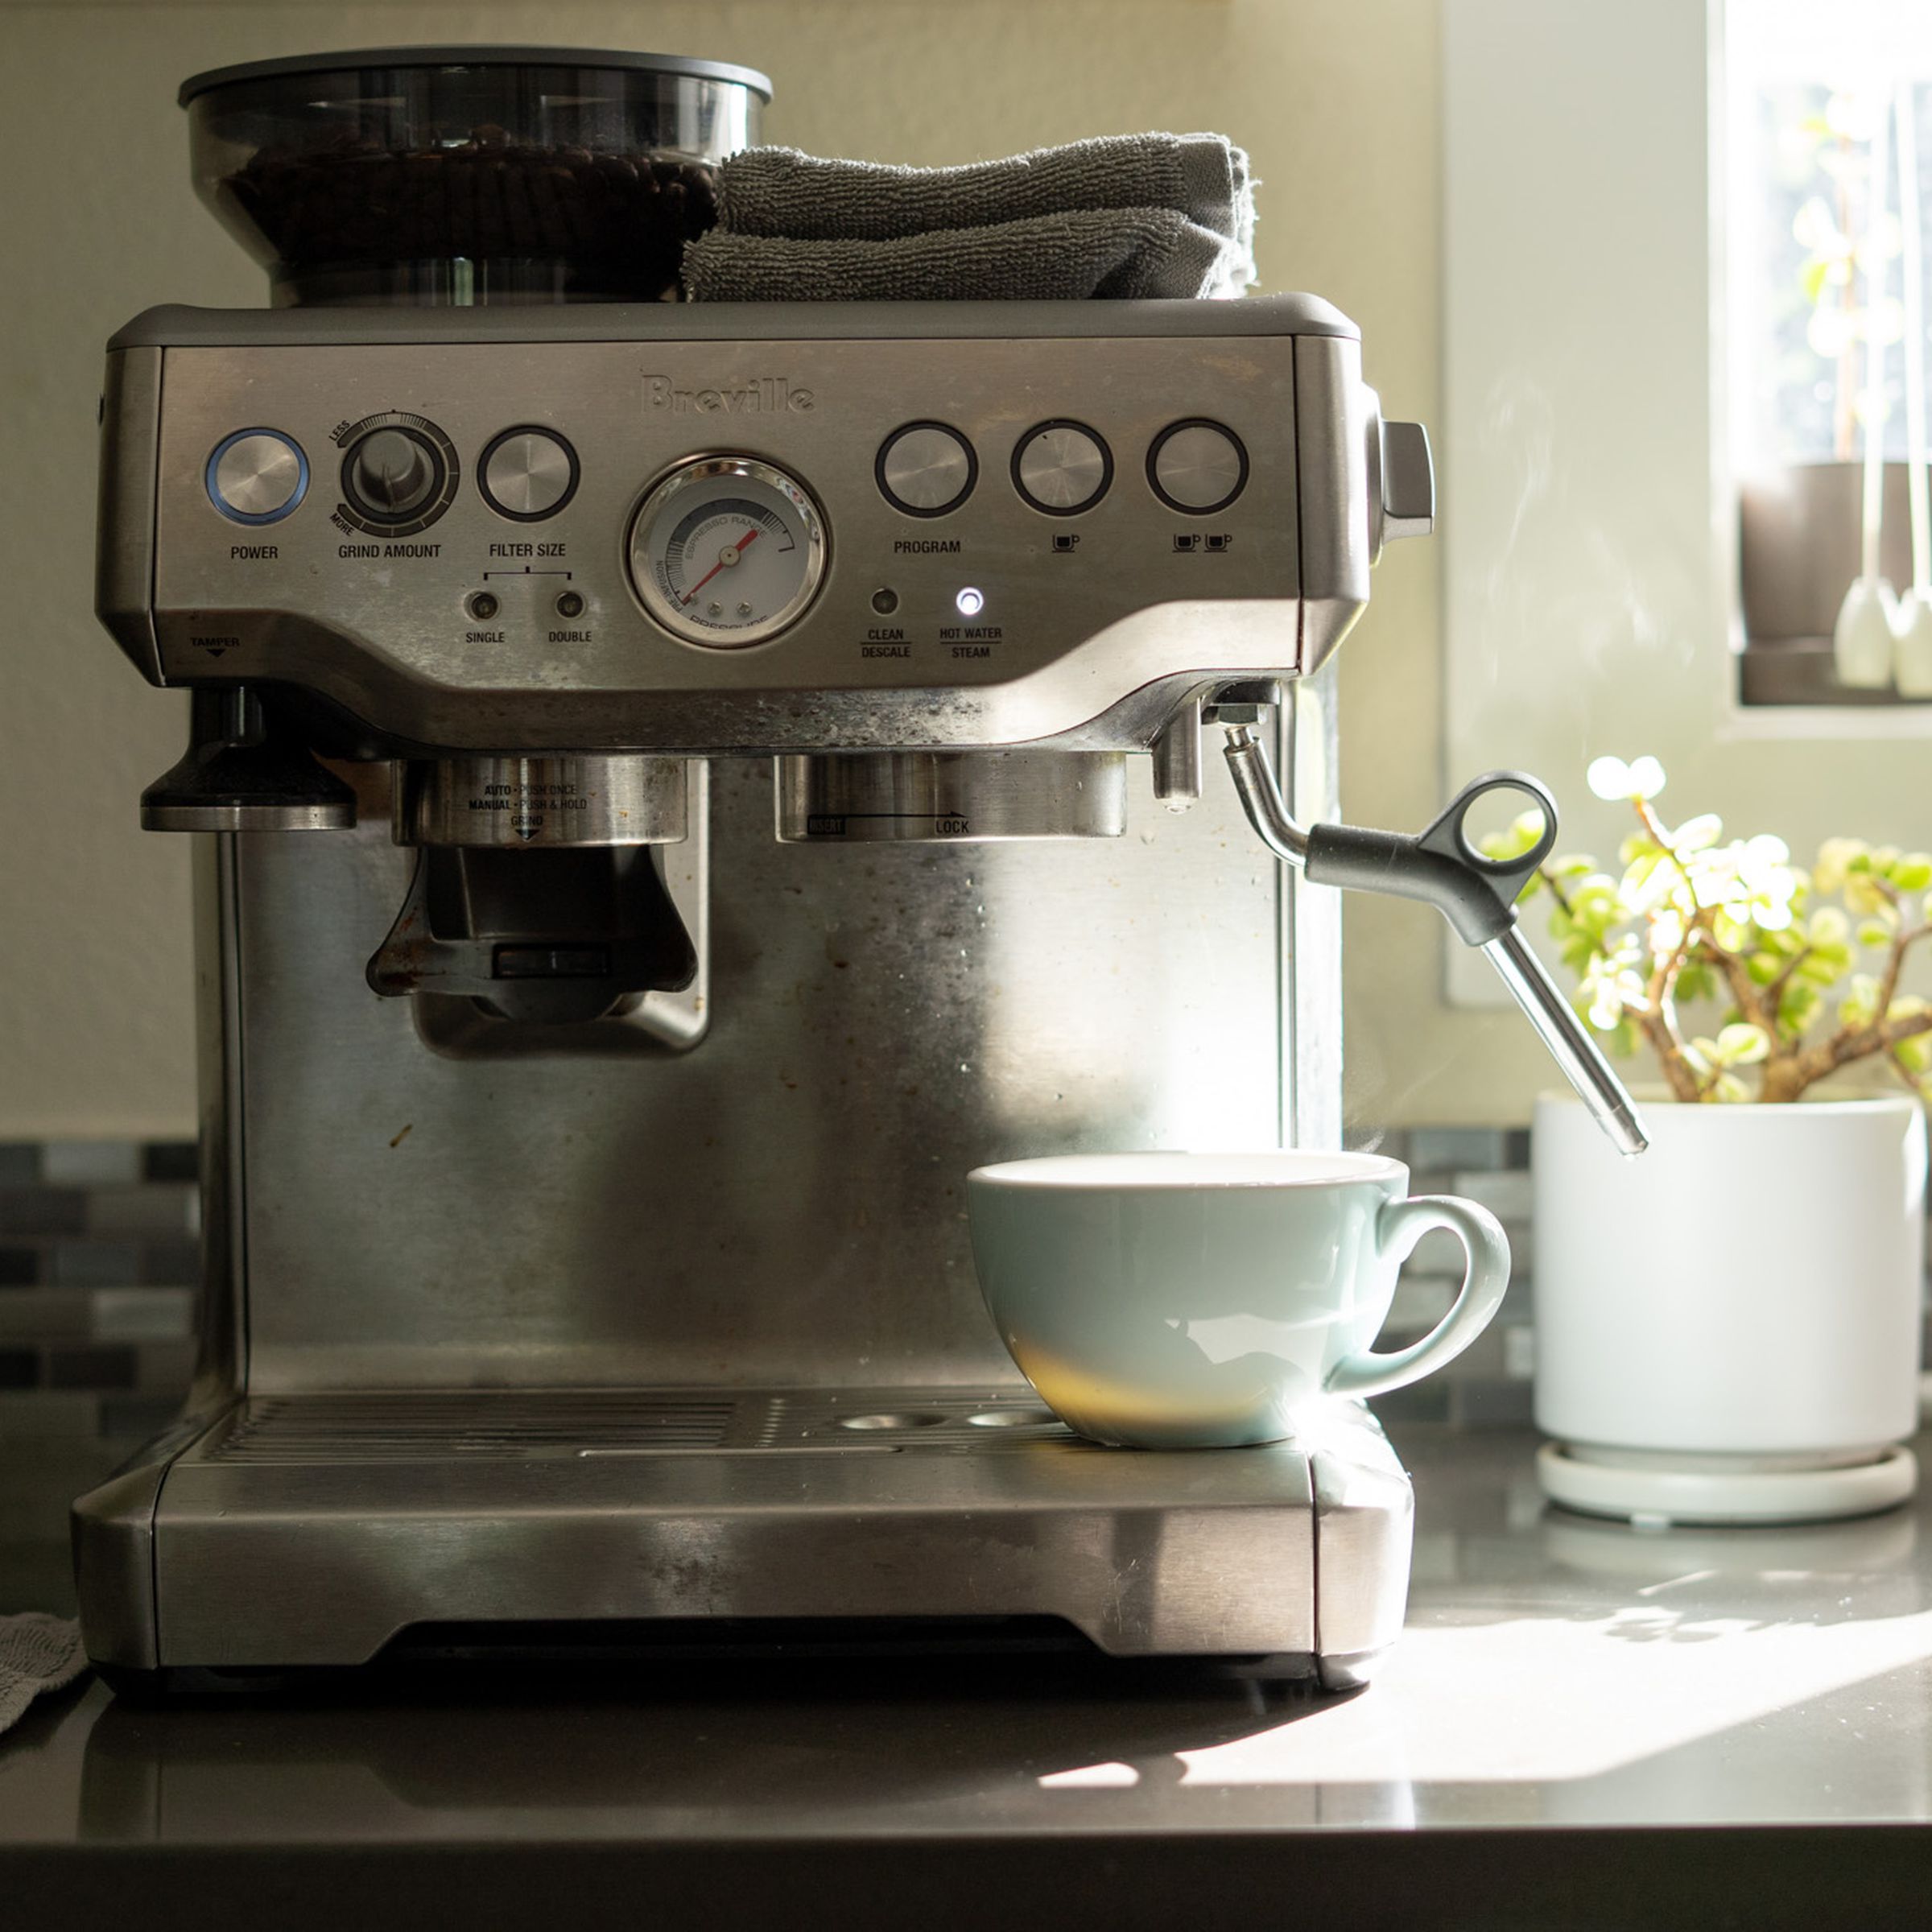 Photo of Breville espresso machine on a counter.